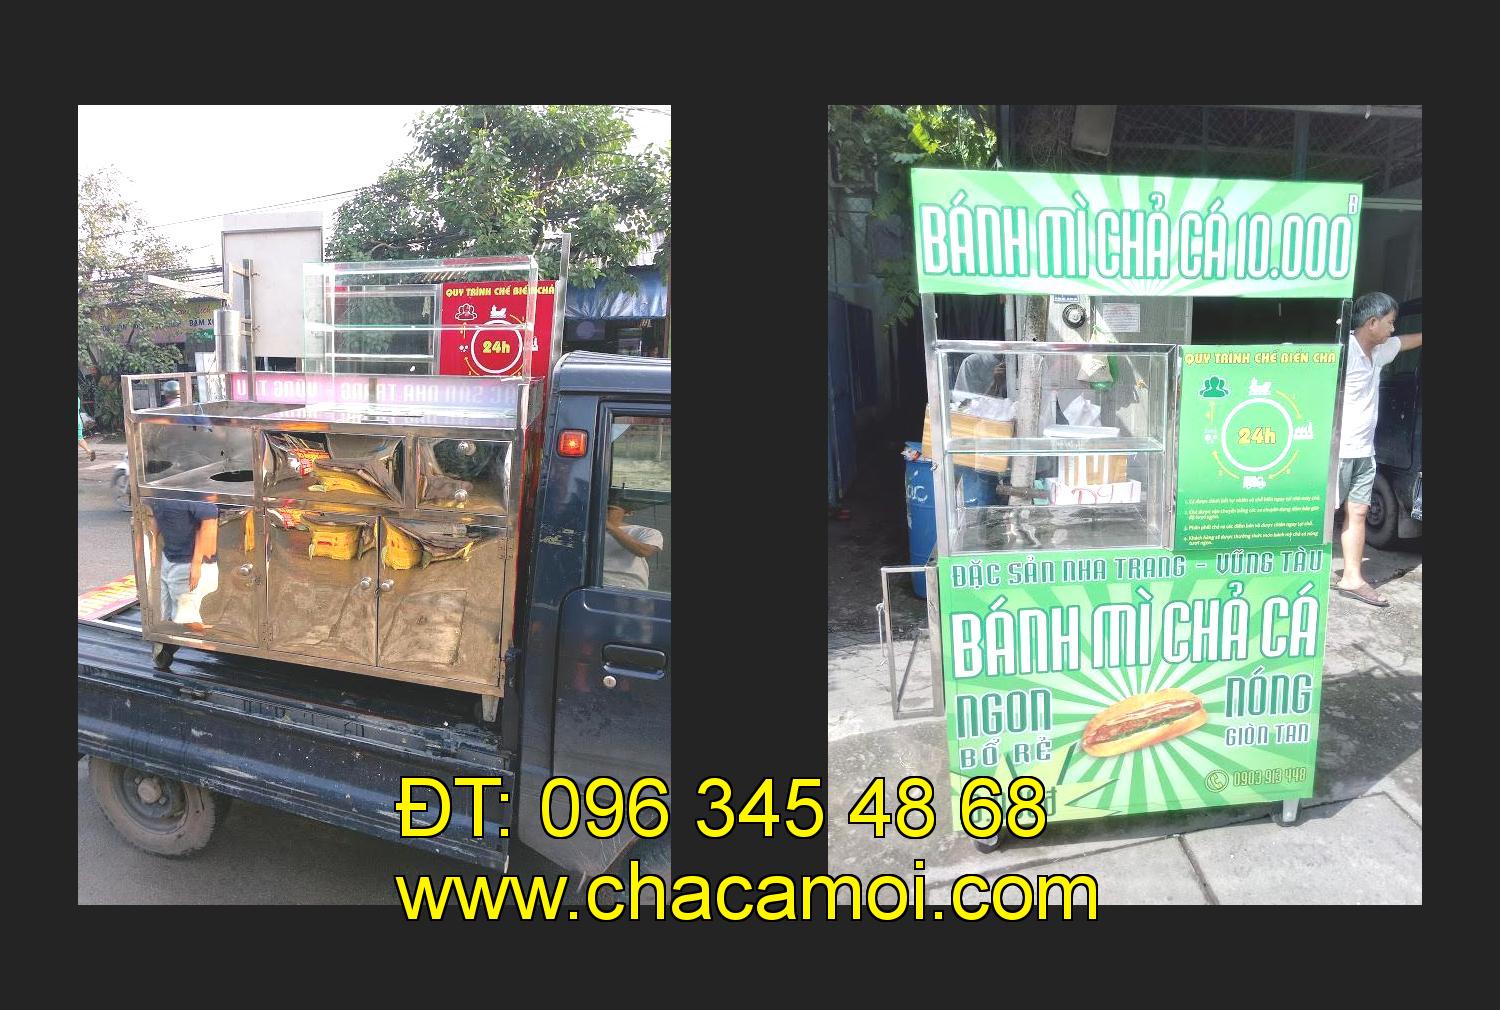 xe bánh mì chả cá giá rẻ tại tỉnh Đắk Lắk